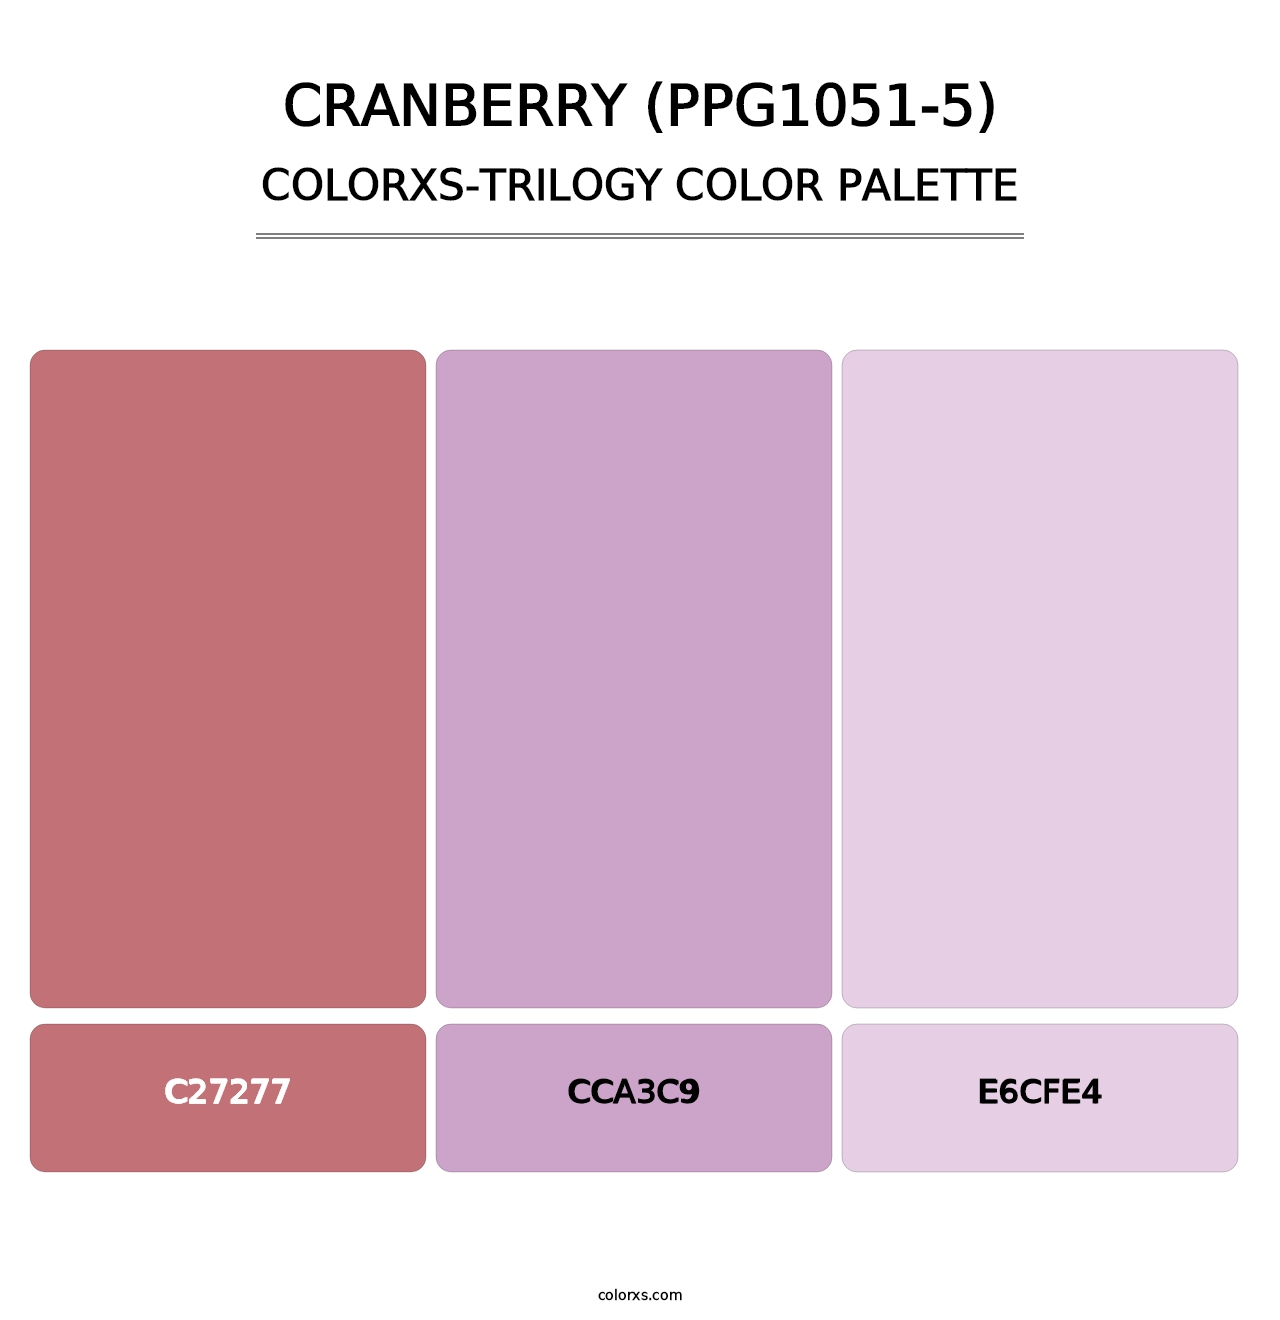 Cranberry (PPG1051-5) - Colorxs Trilogy Palette